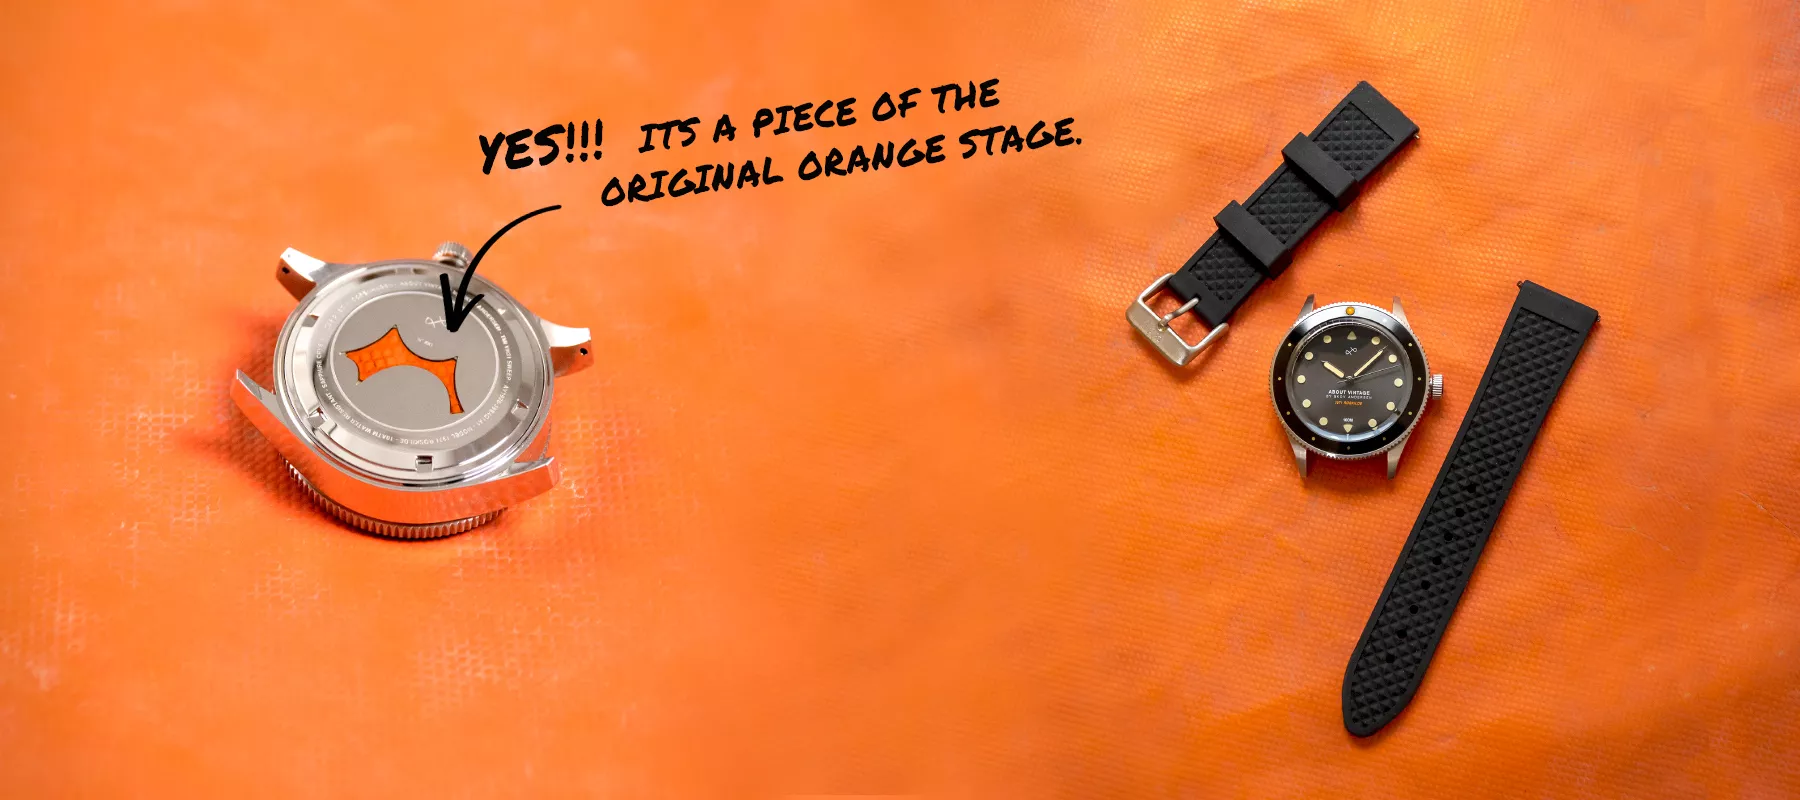 Fasthold dine festivalminder med dit eget stykke af Orange Scene